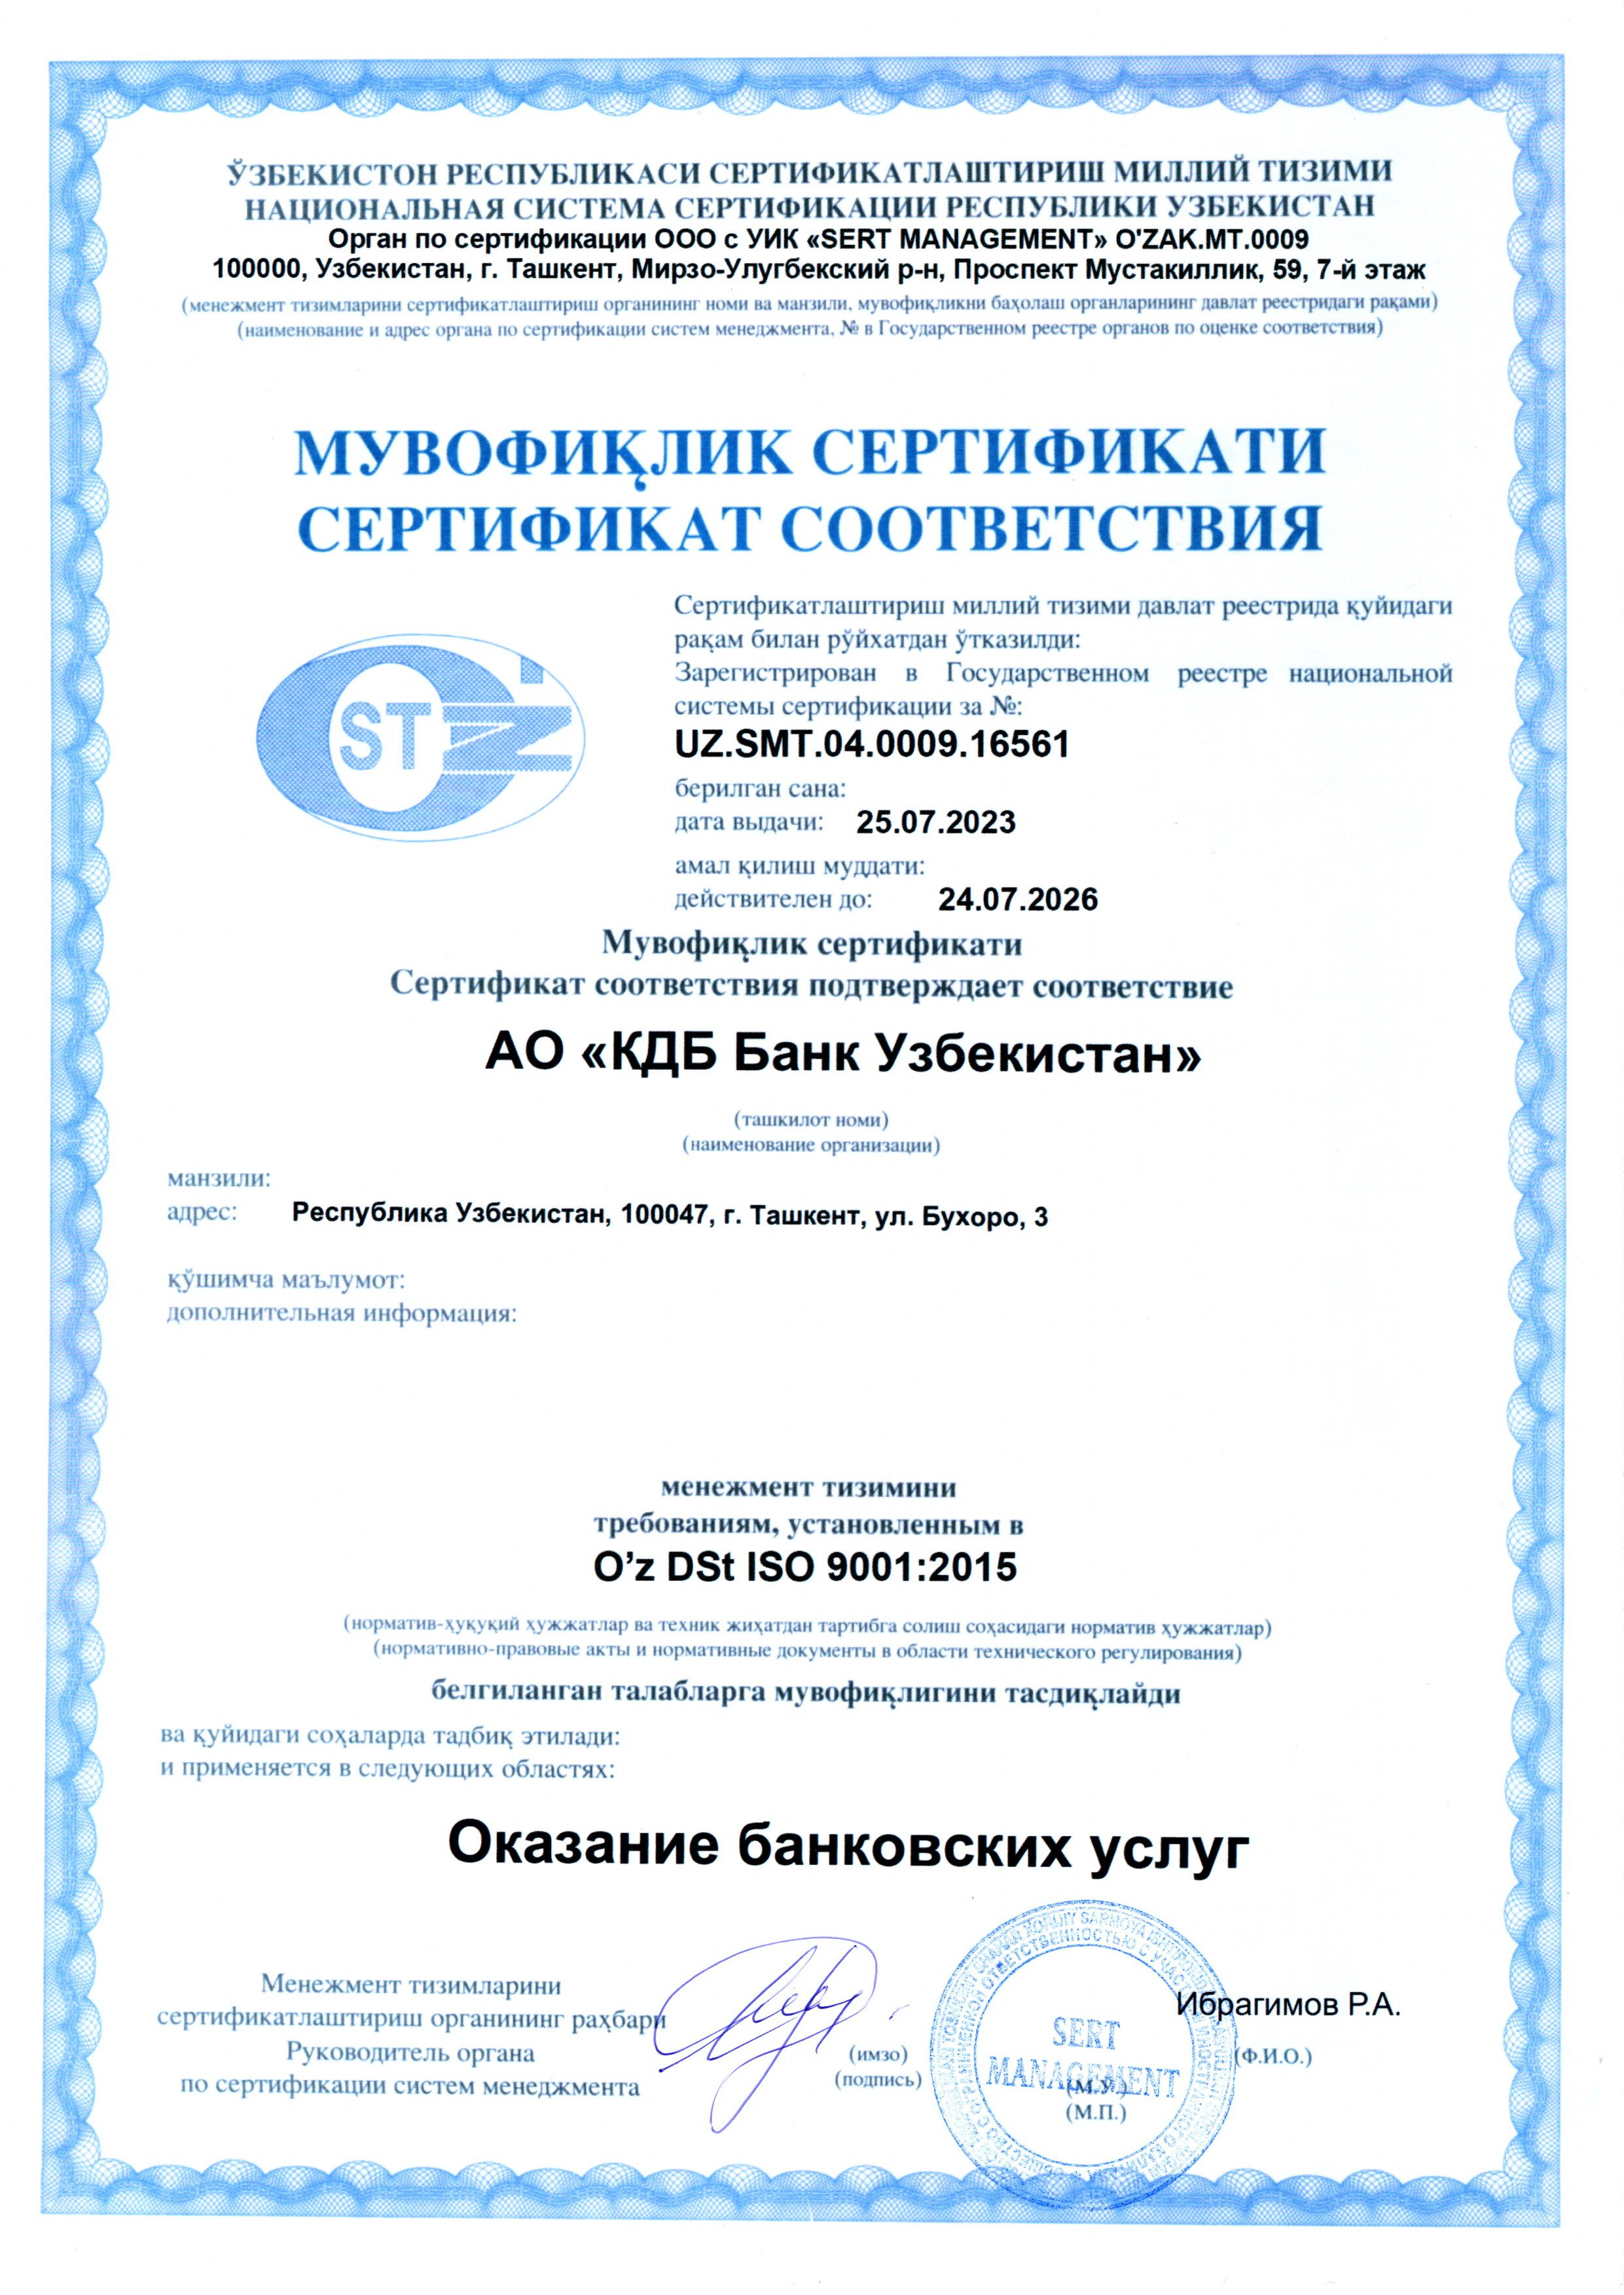 KDB licenses